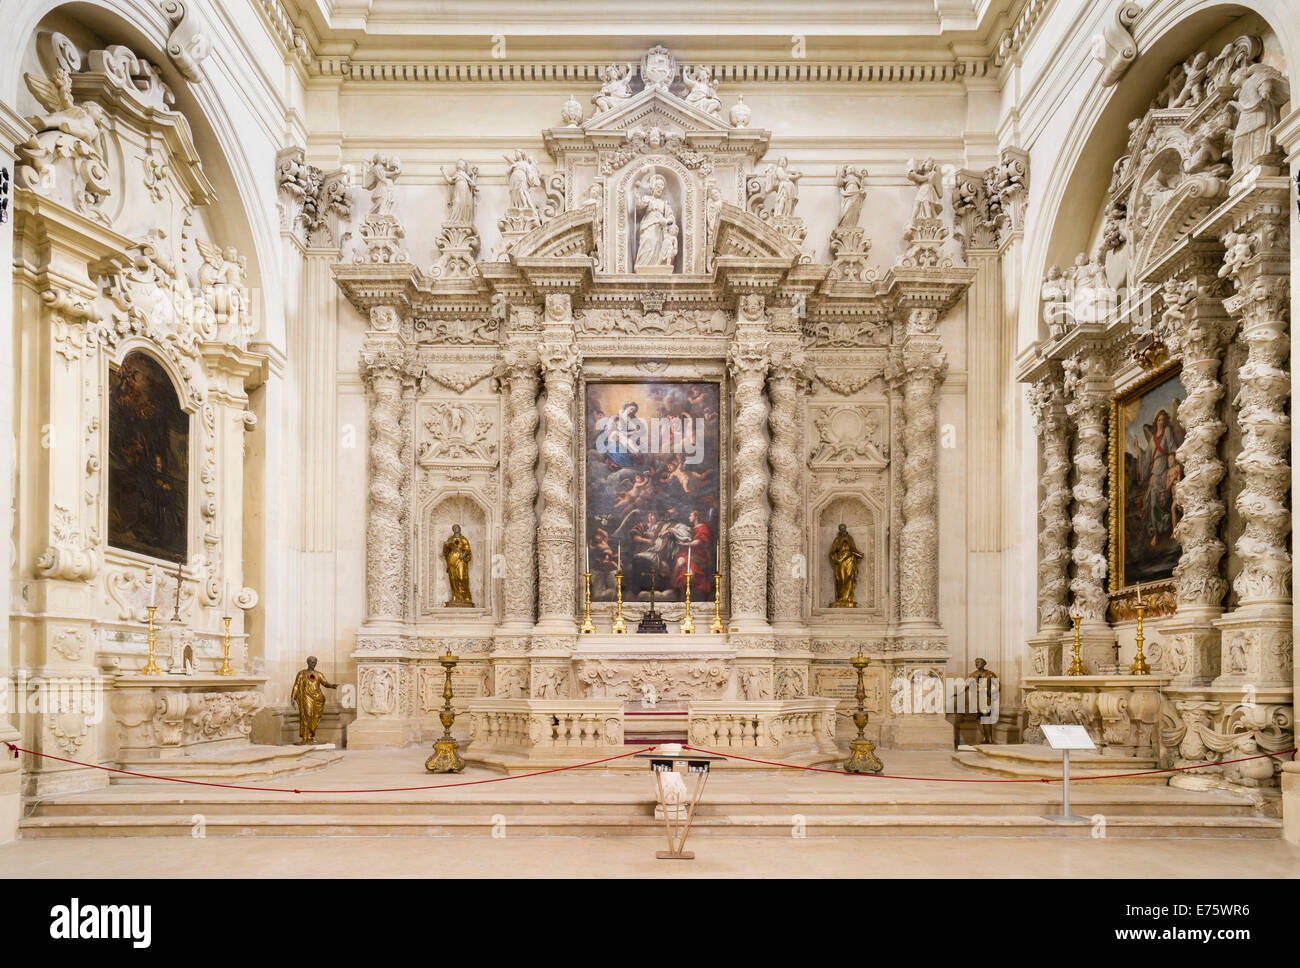 L'altare degli Angeli Custodi altare, 1700, Chiesa di Sant'Irene chiesa, barocco leccese, Lecce, Puglia, Italia Foto Stock